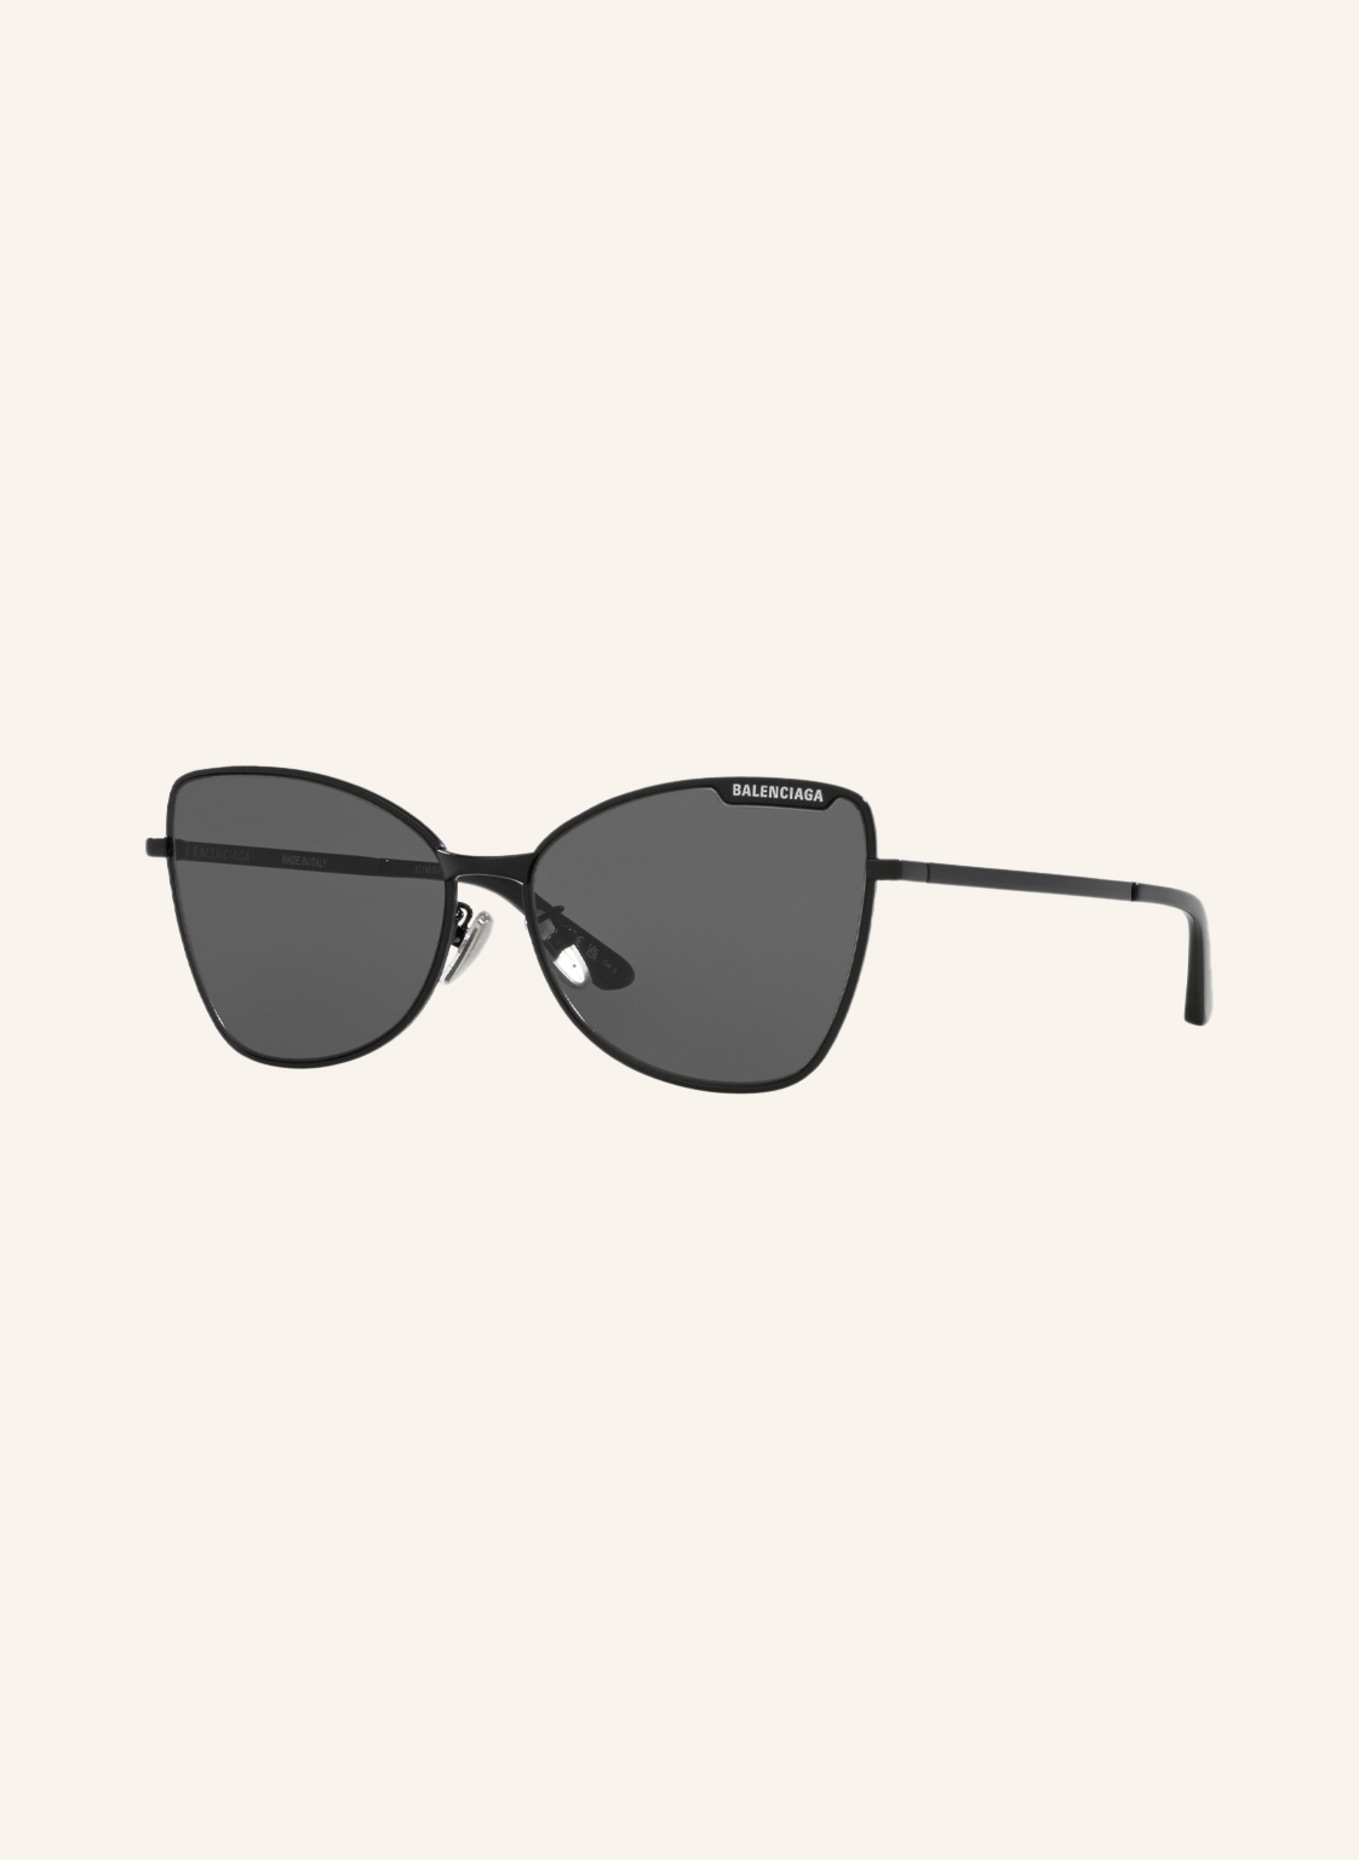 BALENCIAGA Sunglasses BB0278S, Color: 1100L1 - BLACK/DARK GRAY (Image 1)